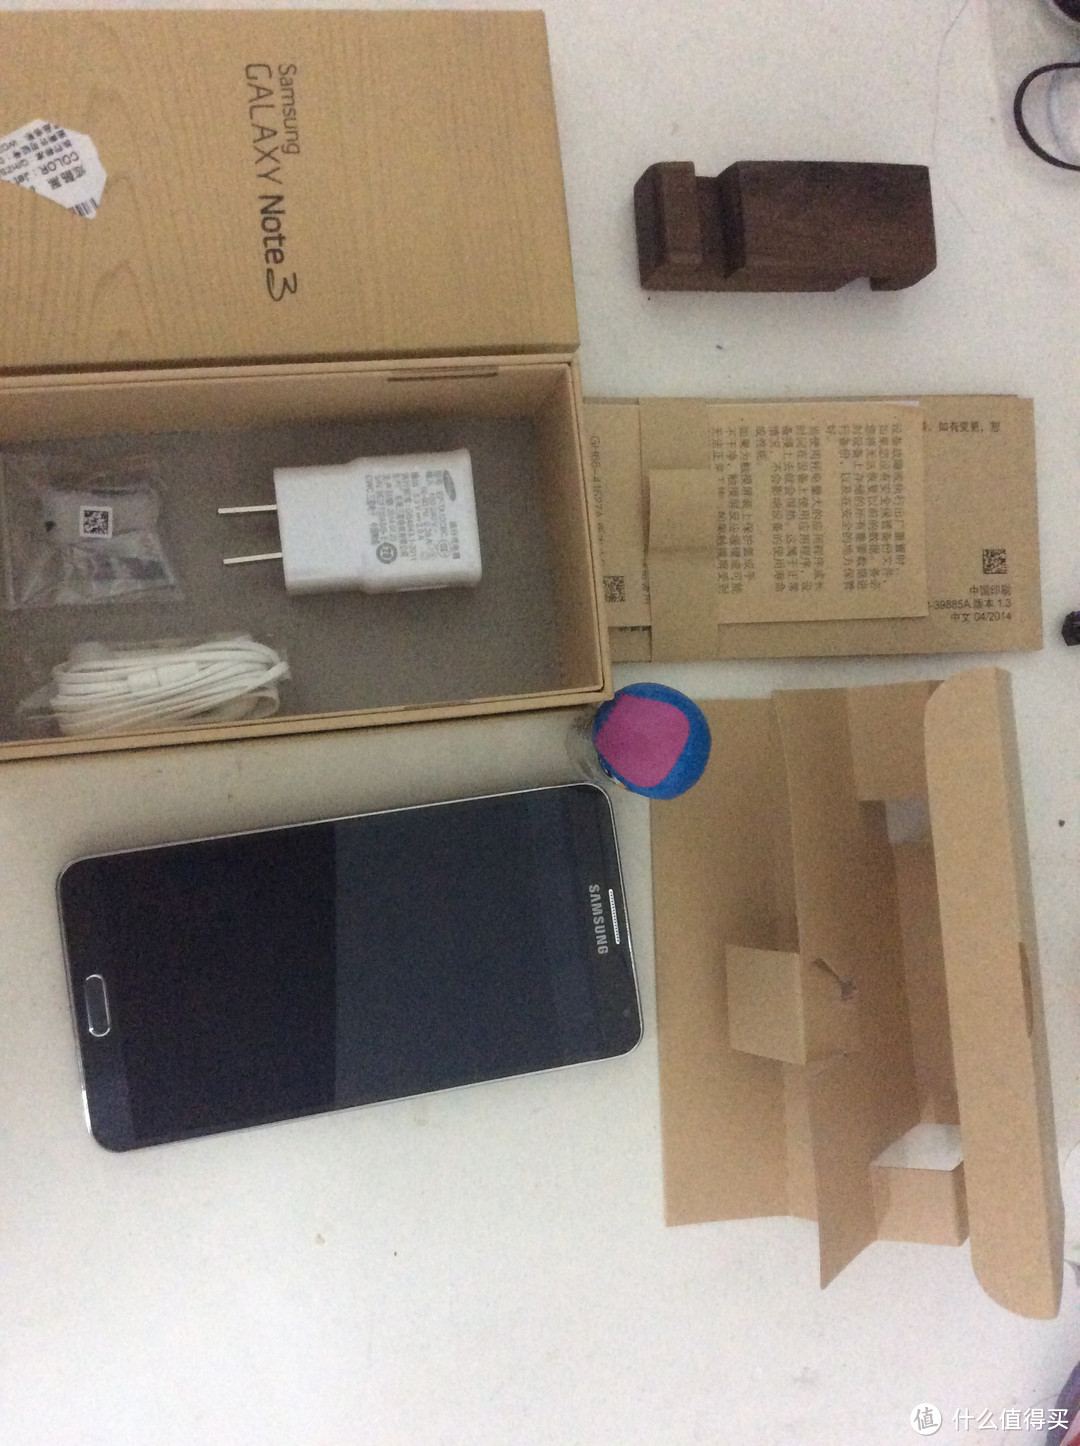 SAMSUNG 三星 Galaxy Note 3 (N9008S)  晒脸